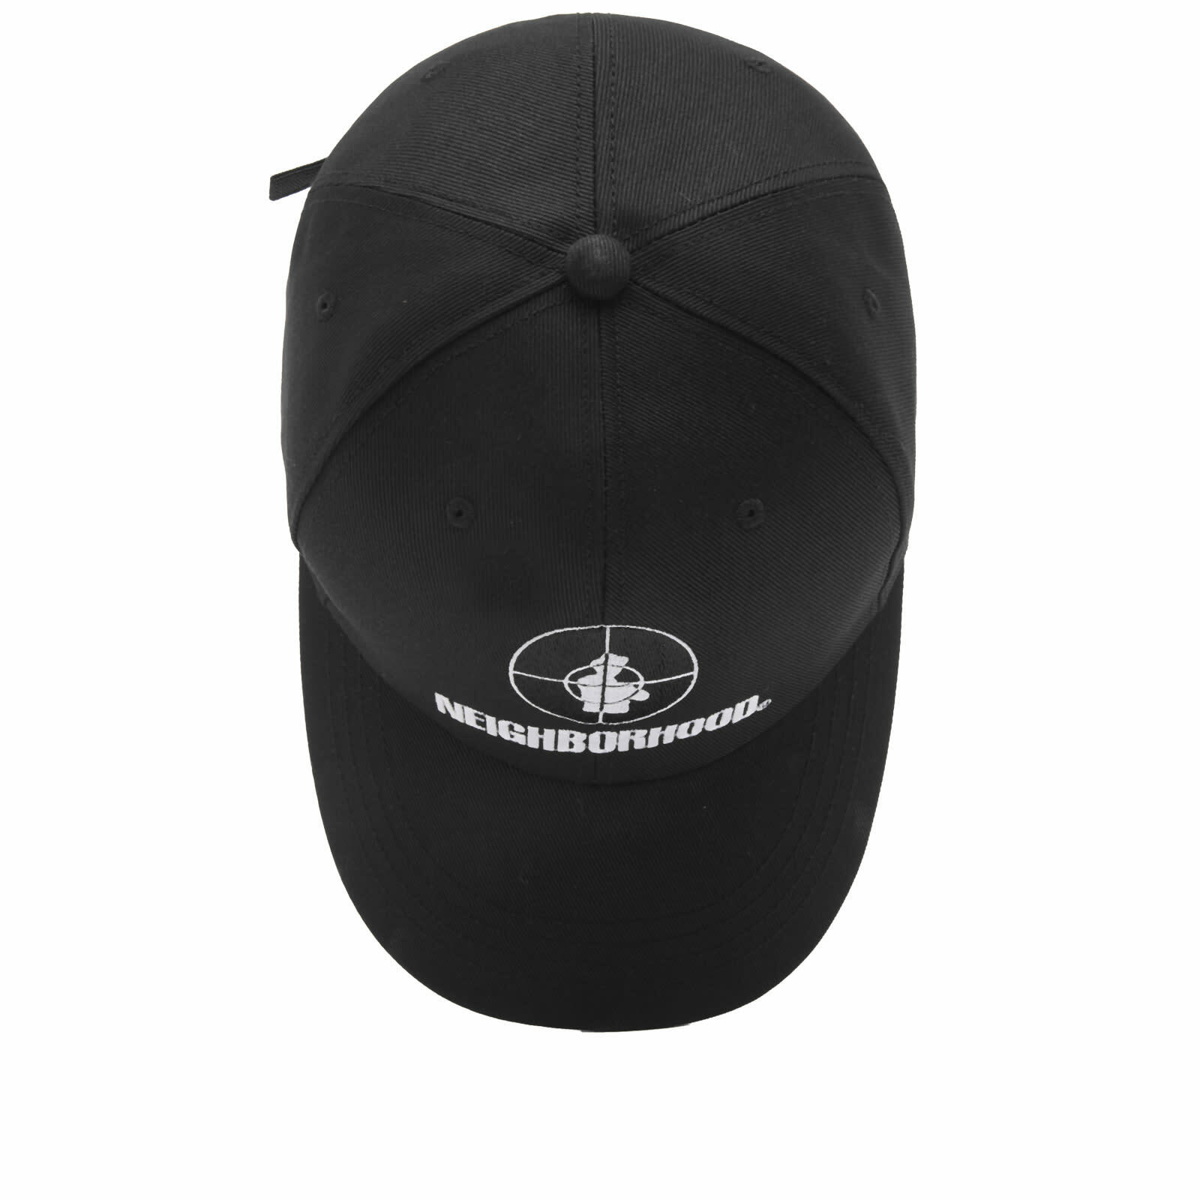 オンライン販売店舗 NEIGHBORHOOD X PUBLIC ENEMY CAP - 帽子